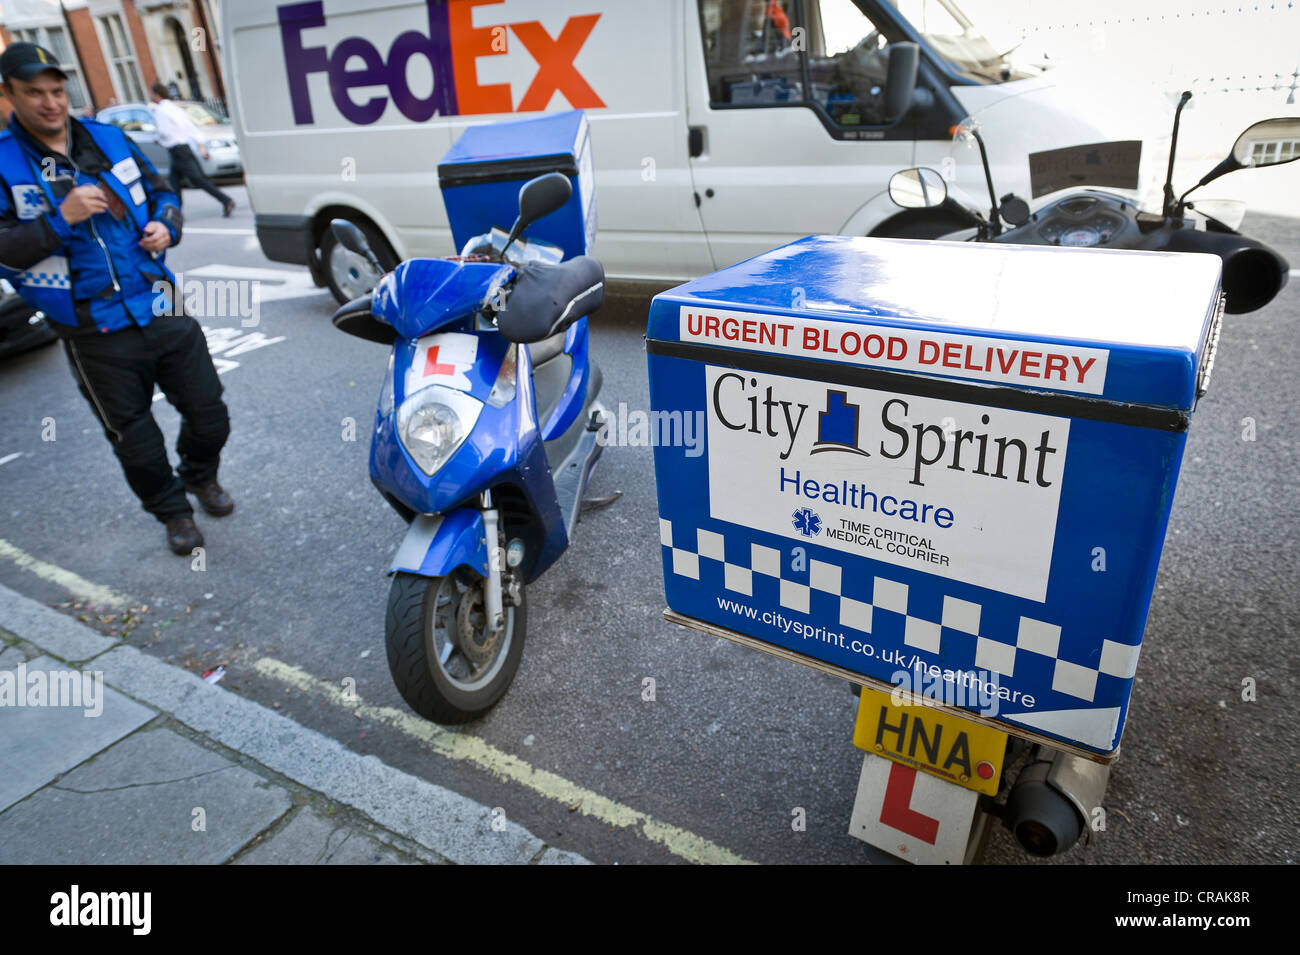 Fed-Ex, pilote moto avec récipient pour unités de sang, Marylebone, Londres, Angleterre, Royaume-Uni, Europe Banque D'Images